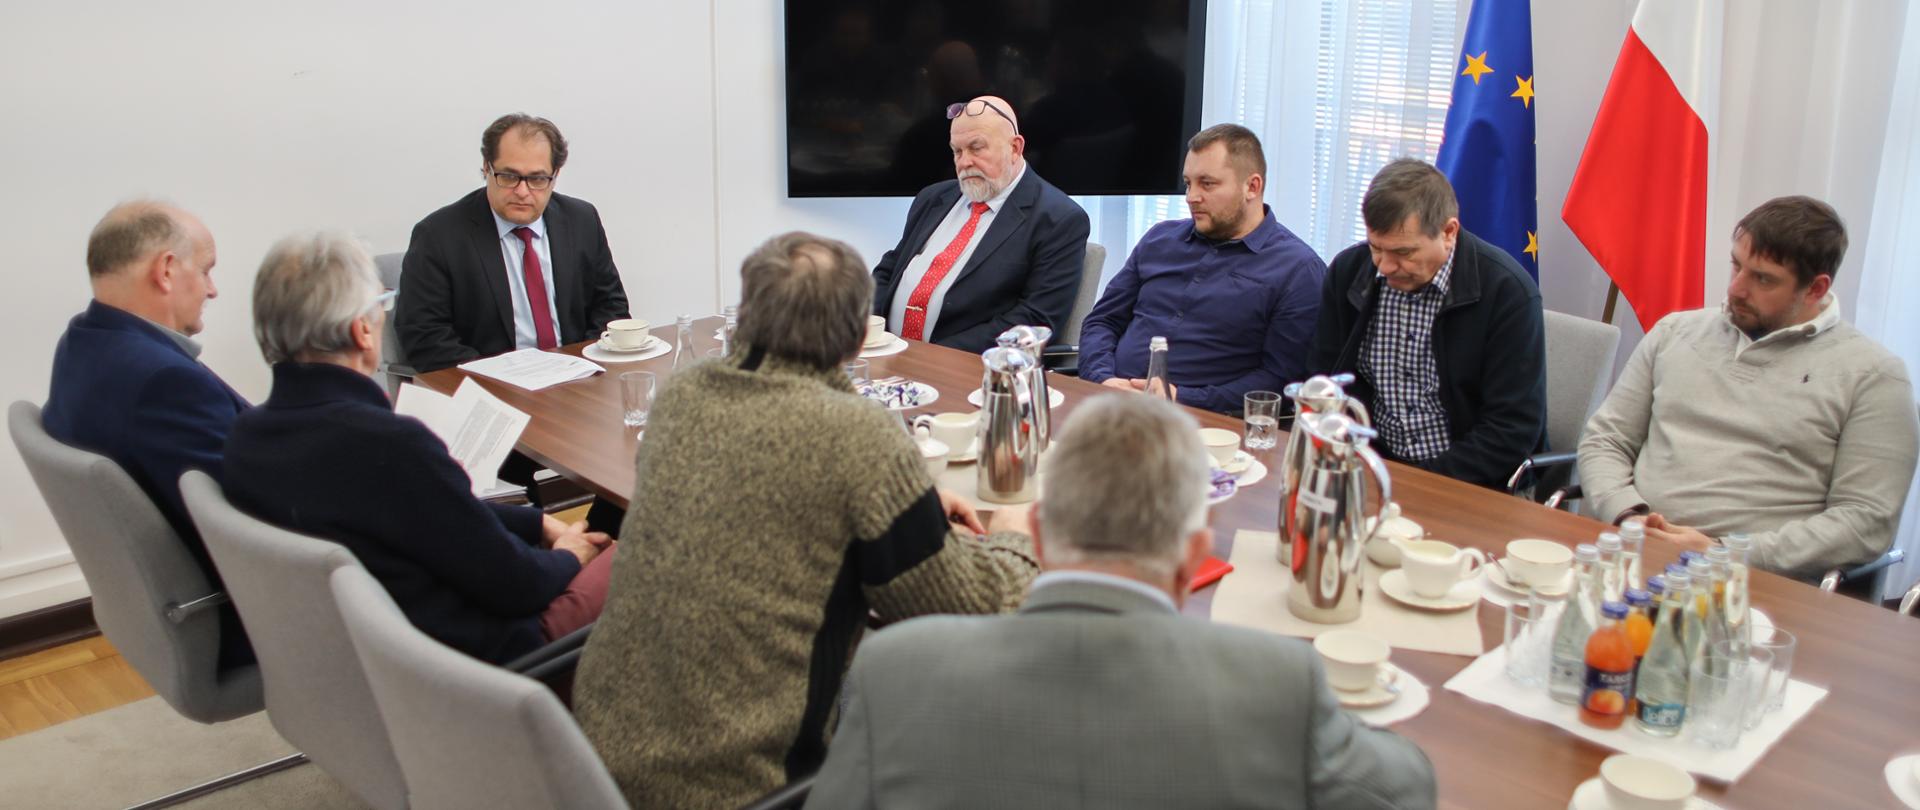 Spotkanie ministra Marka Gróbarczyka z przedstawicielami rybołówstwa rekreacyjnego. Uczestnicy spotkania rozmawiają przy stole.